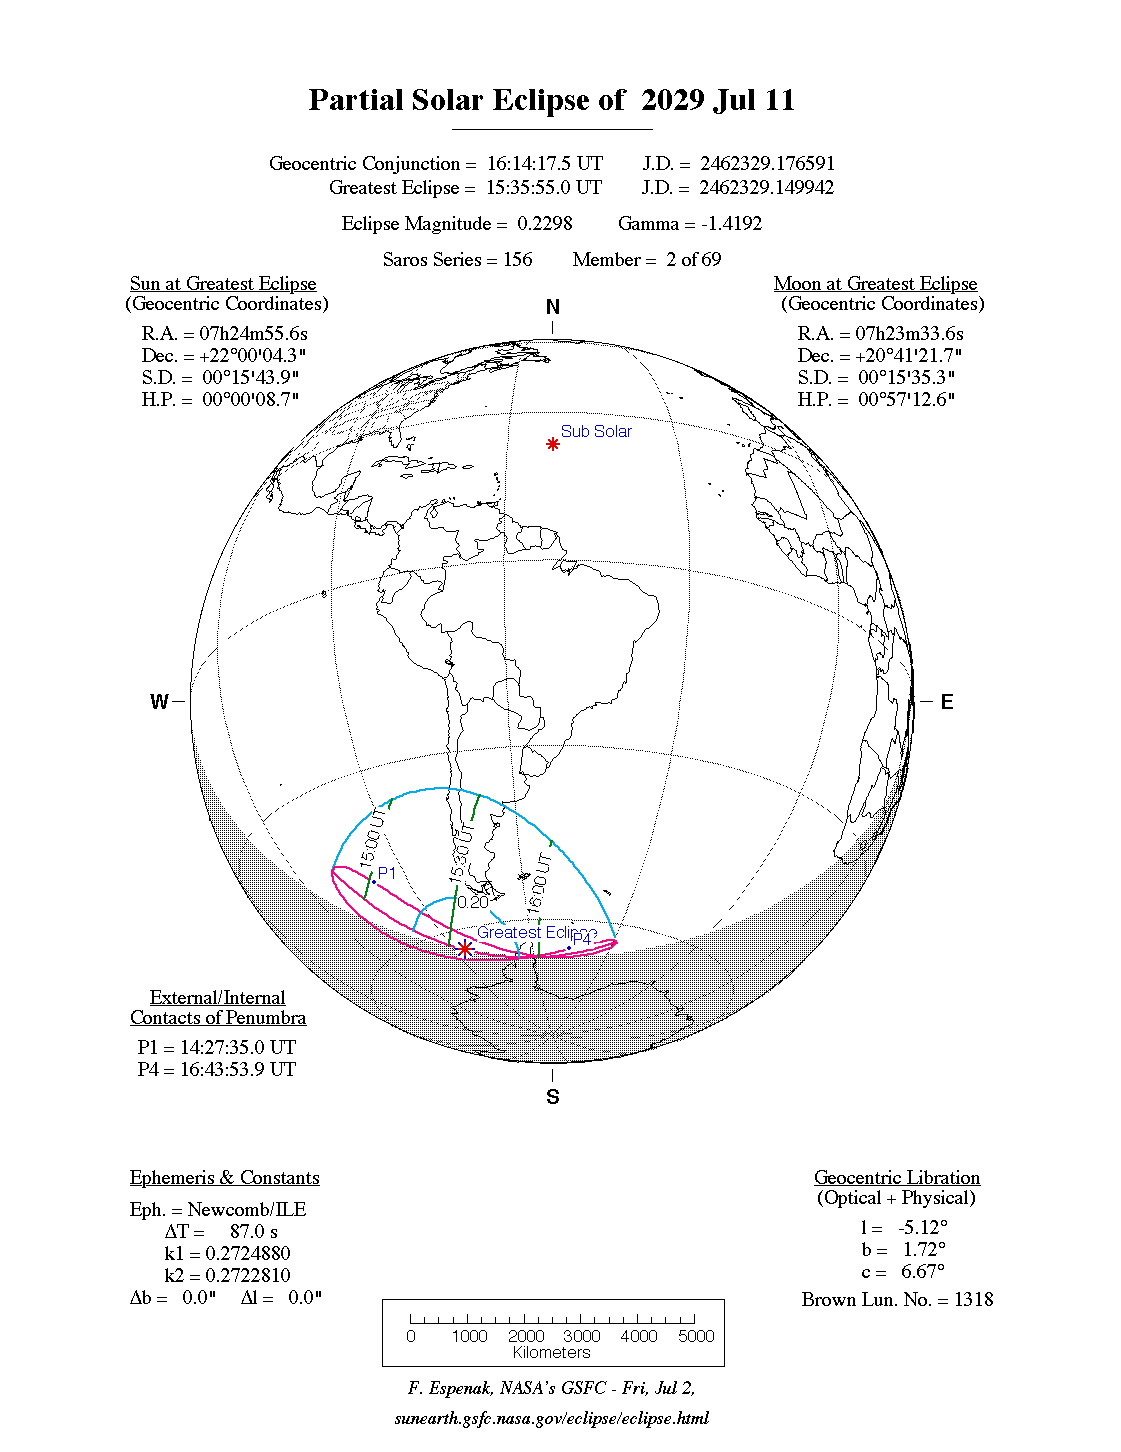 Verlauf der Partiellen Sonnenfinsternis am 11.07.2029